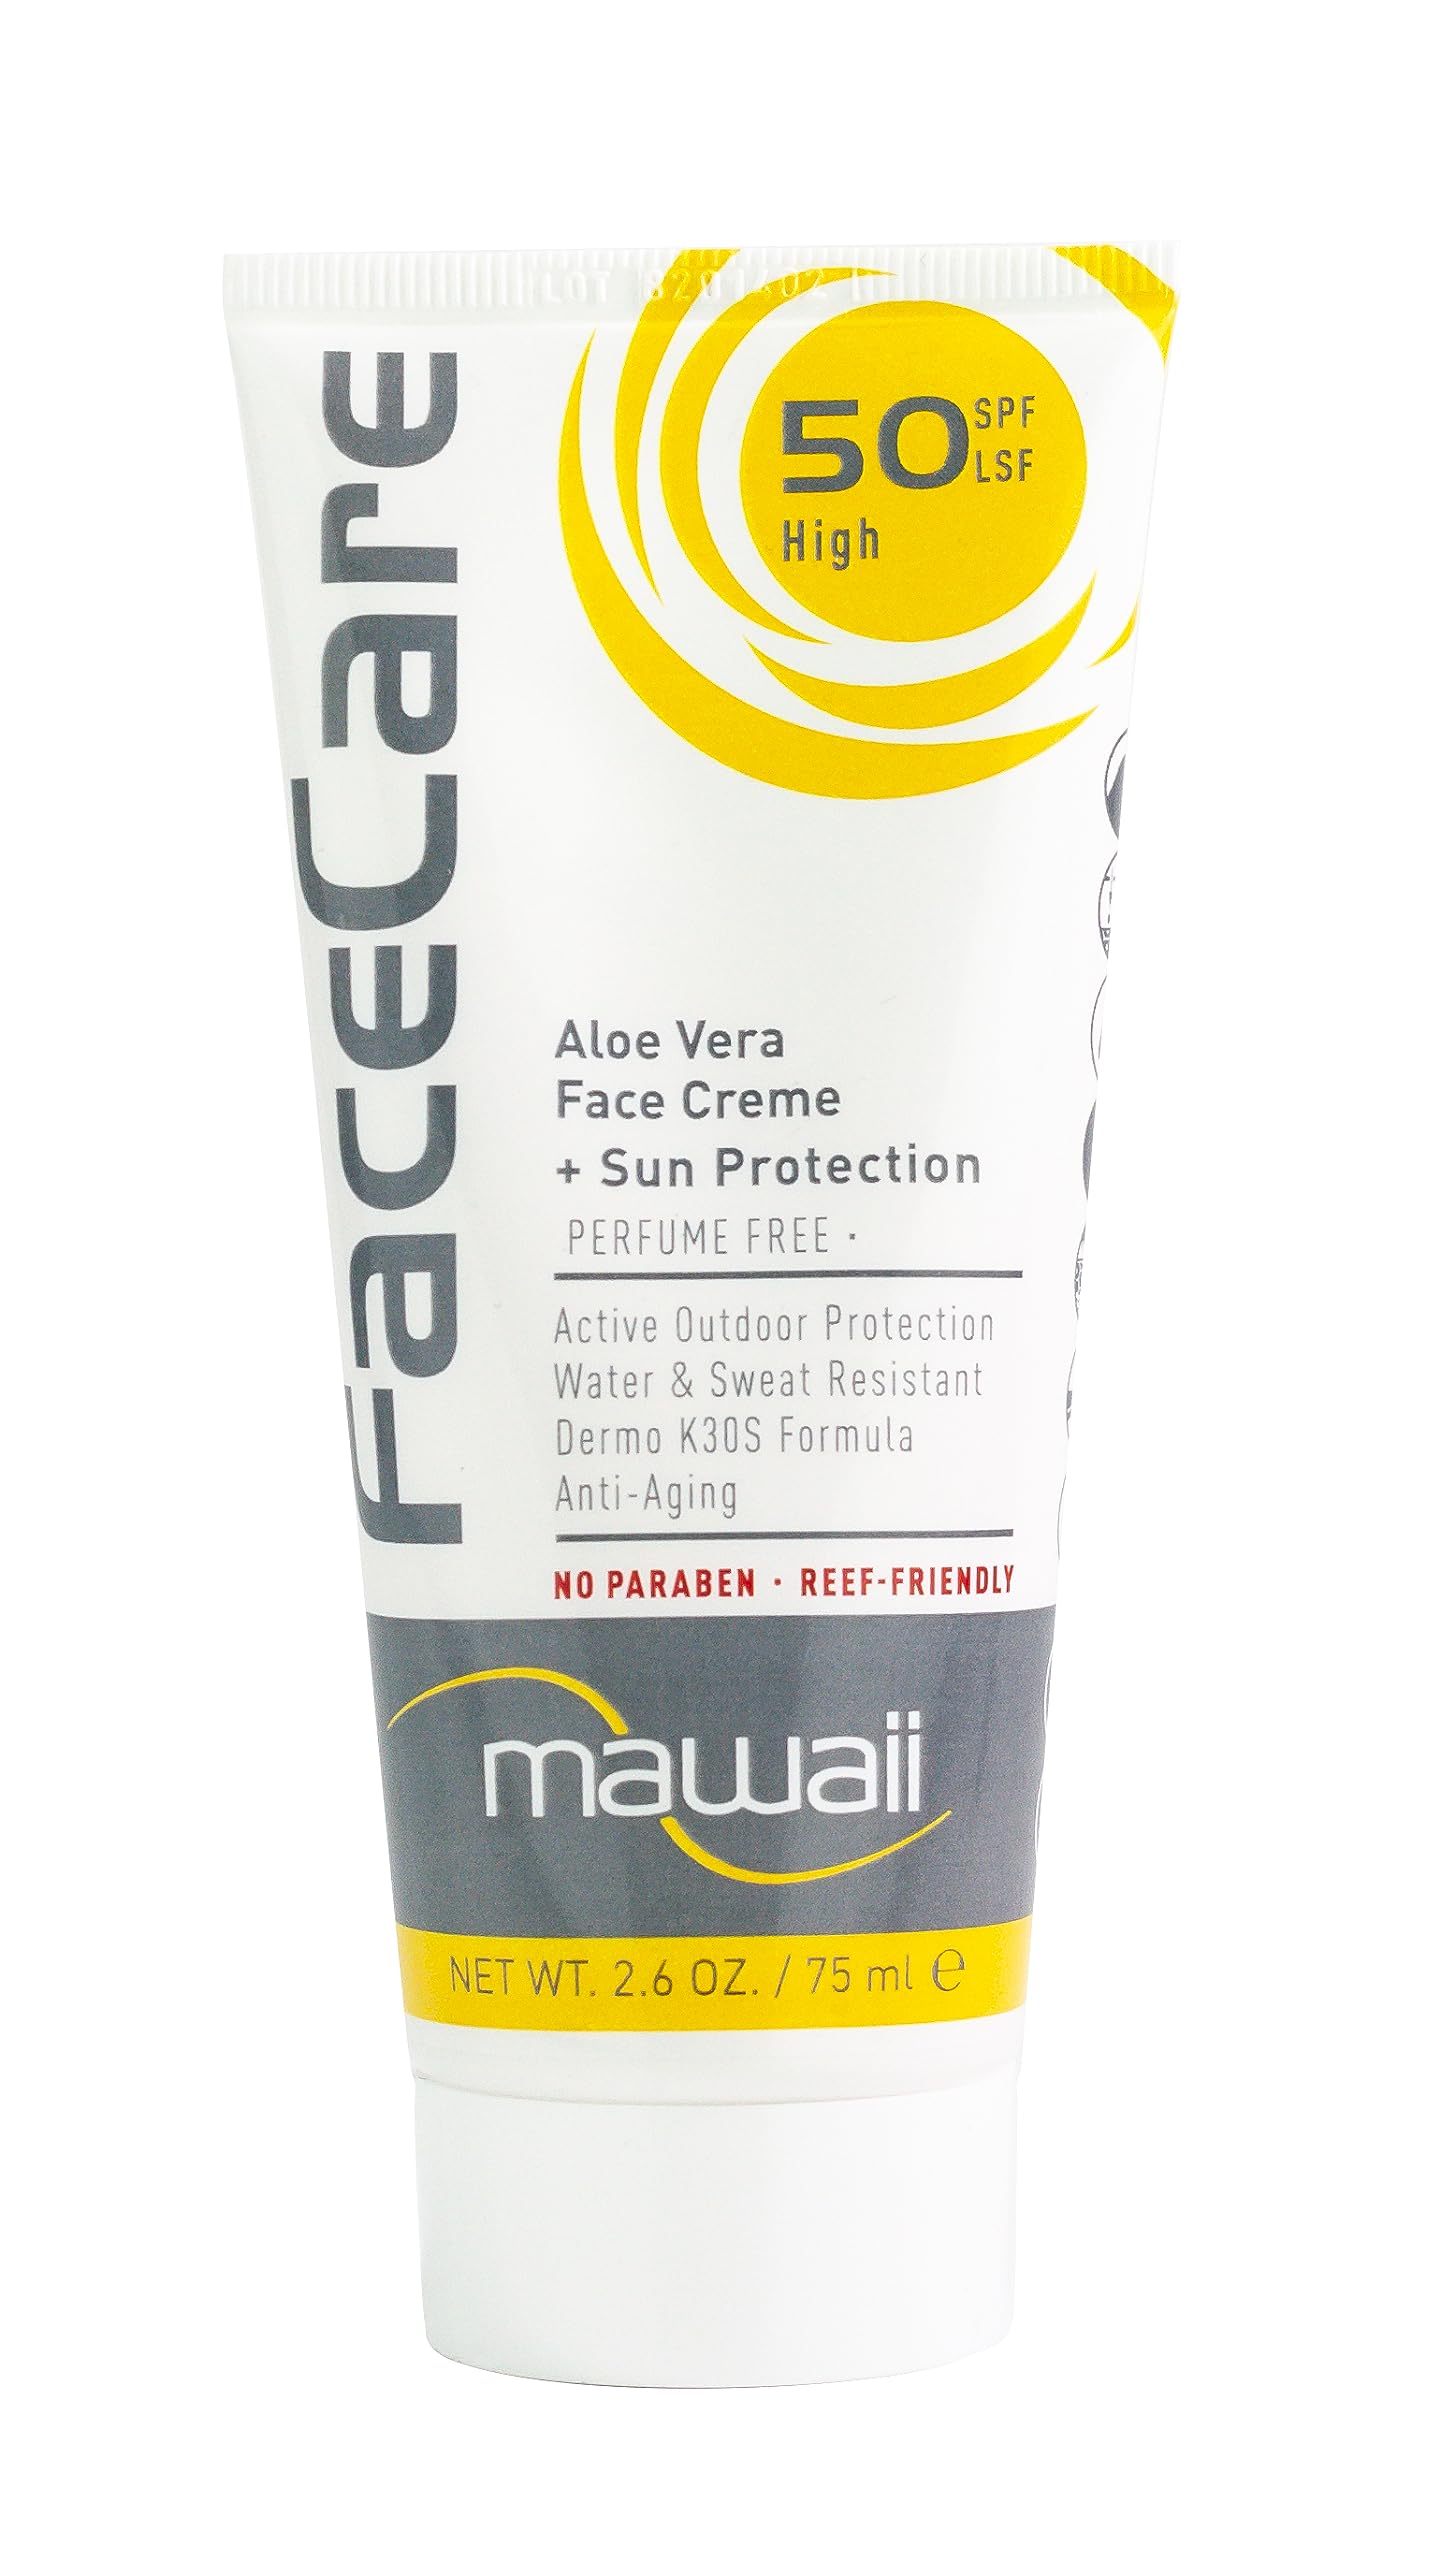 Mawaii Sonnencreme Sport & Surfen Gesichtscreme 50 SPF - 75 ml - Aloe Vera Wasserfest und Schweißfest Sonnenschutzcreme, ideal für Wassersport und Outdoor Sportarten sowie Anti-Aging Sonnenschutz